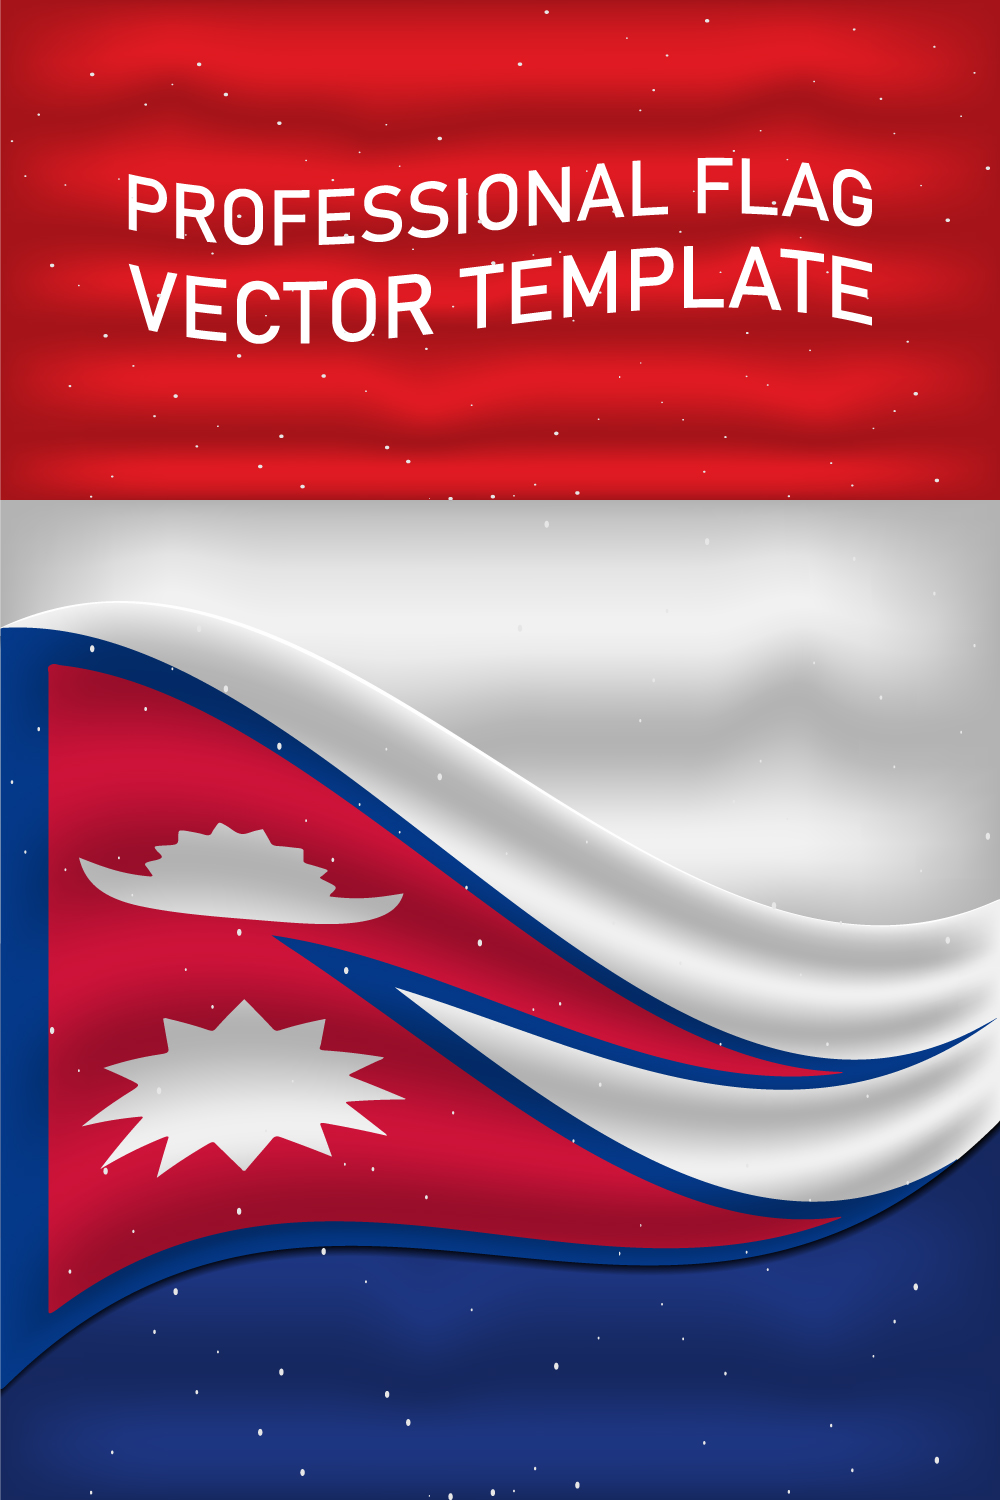 Elegant image of the flag of Nepal.